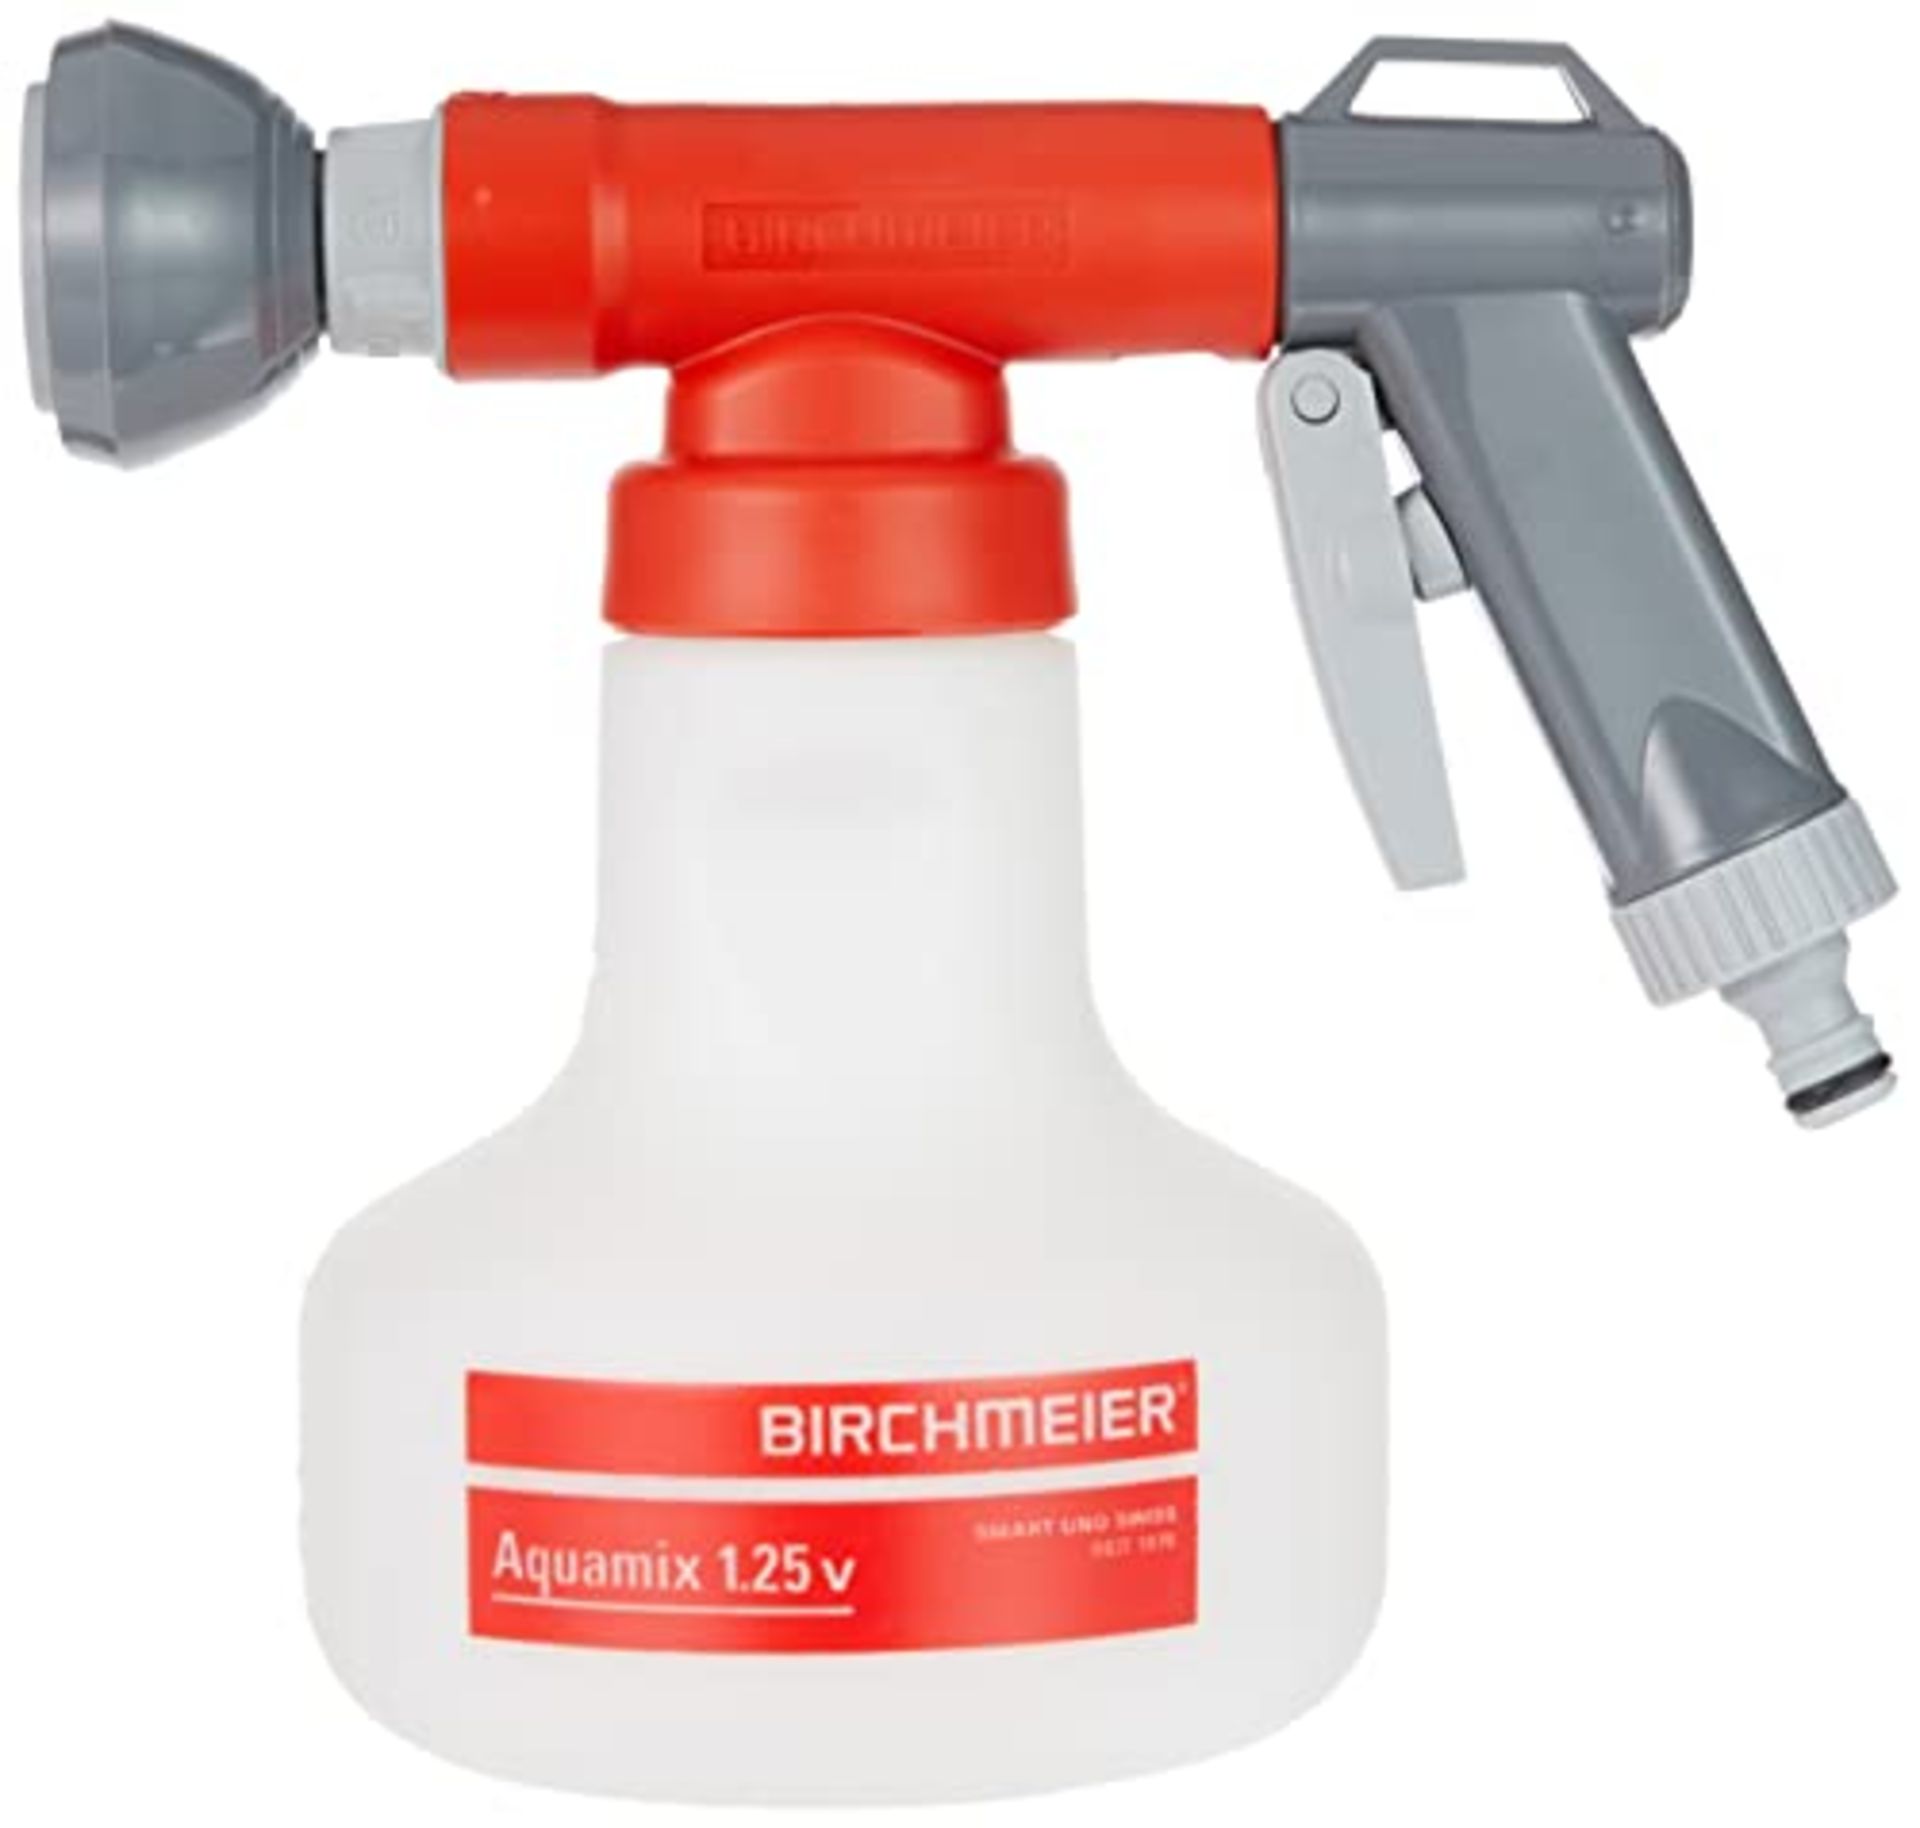 [NEW] Birchmeier Aquamix 1.25 V Fertilizer / Water Mixer - For precise dosing of liqui